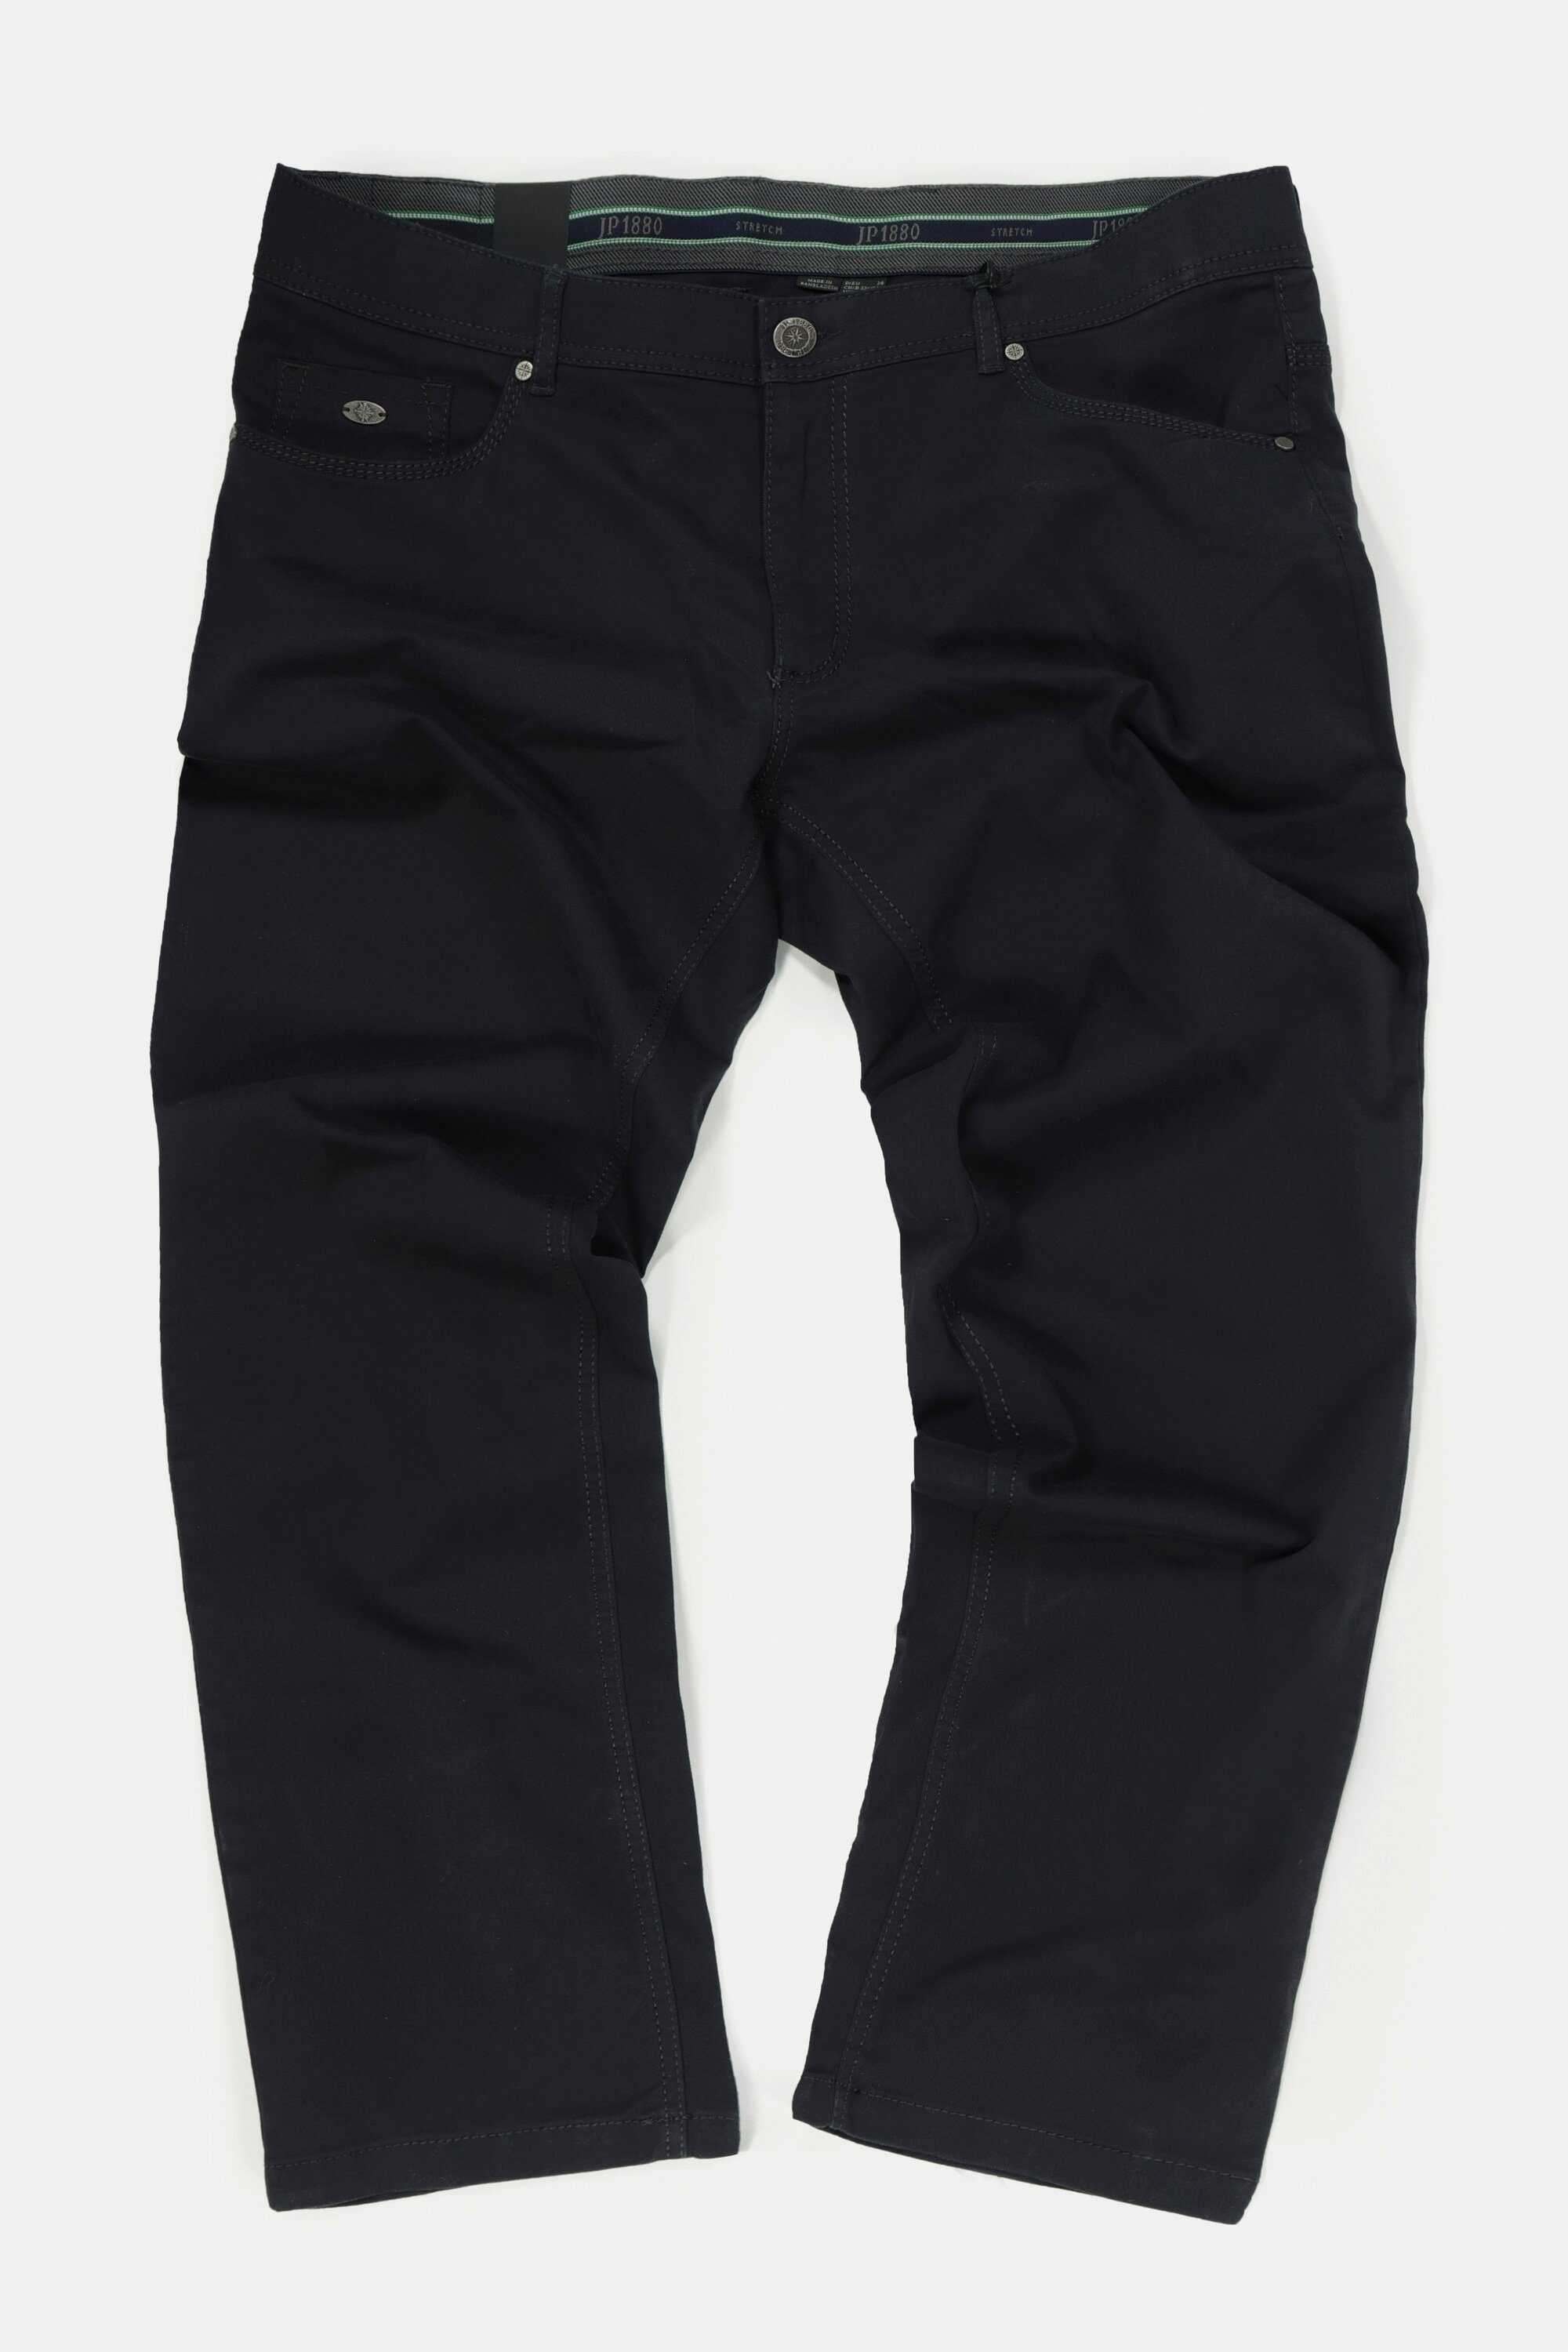 Hose 5-Pocket-Jeans 5-Pocket Regular elastischer Bund JP1880 dunkel Fit marine